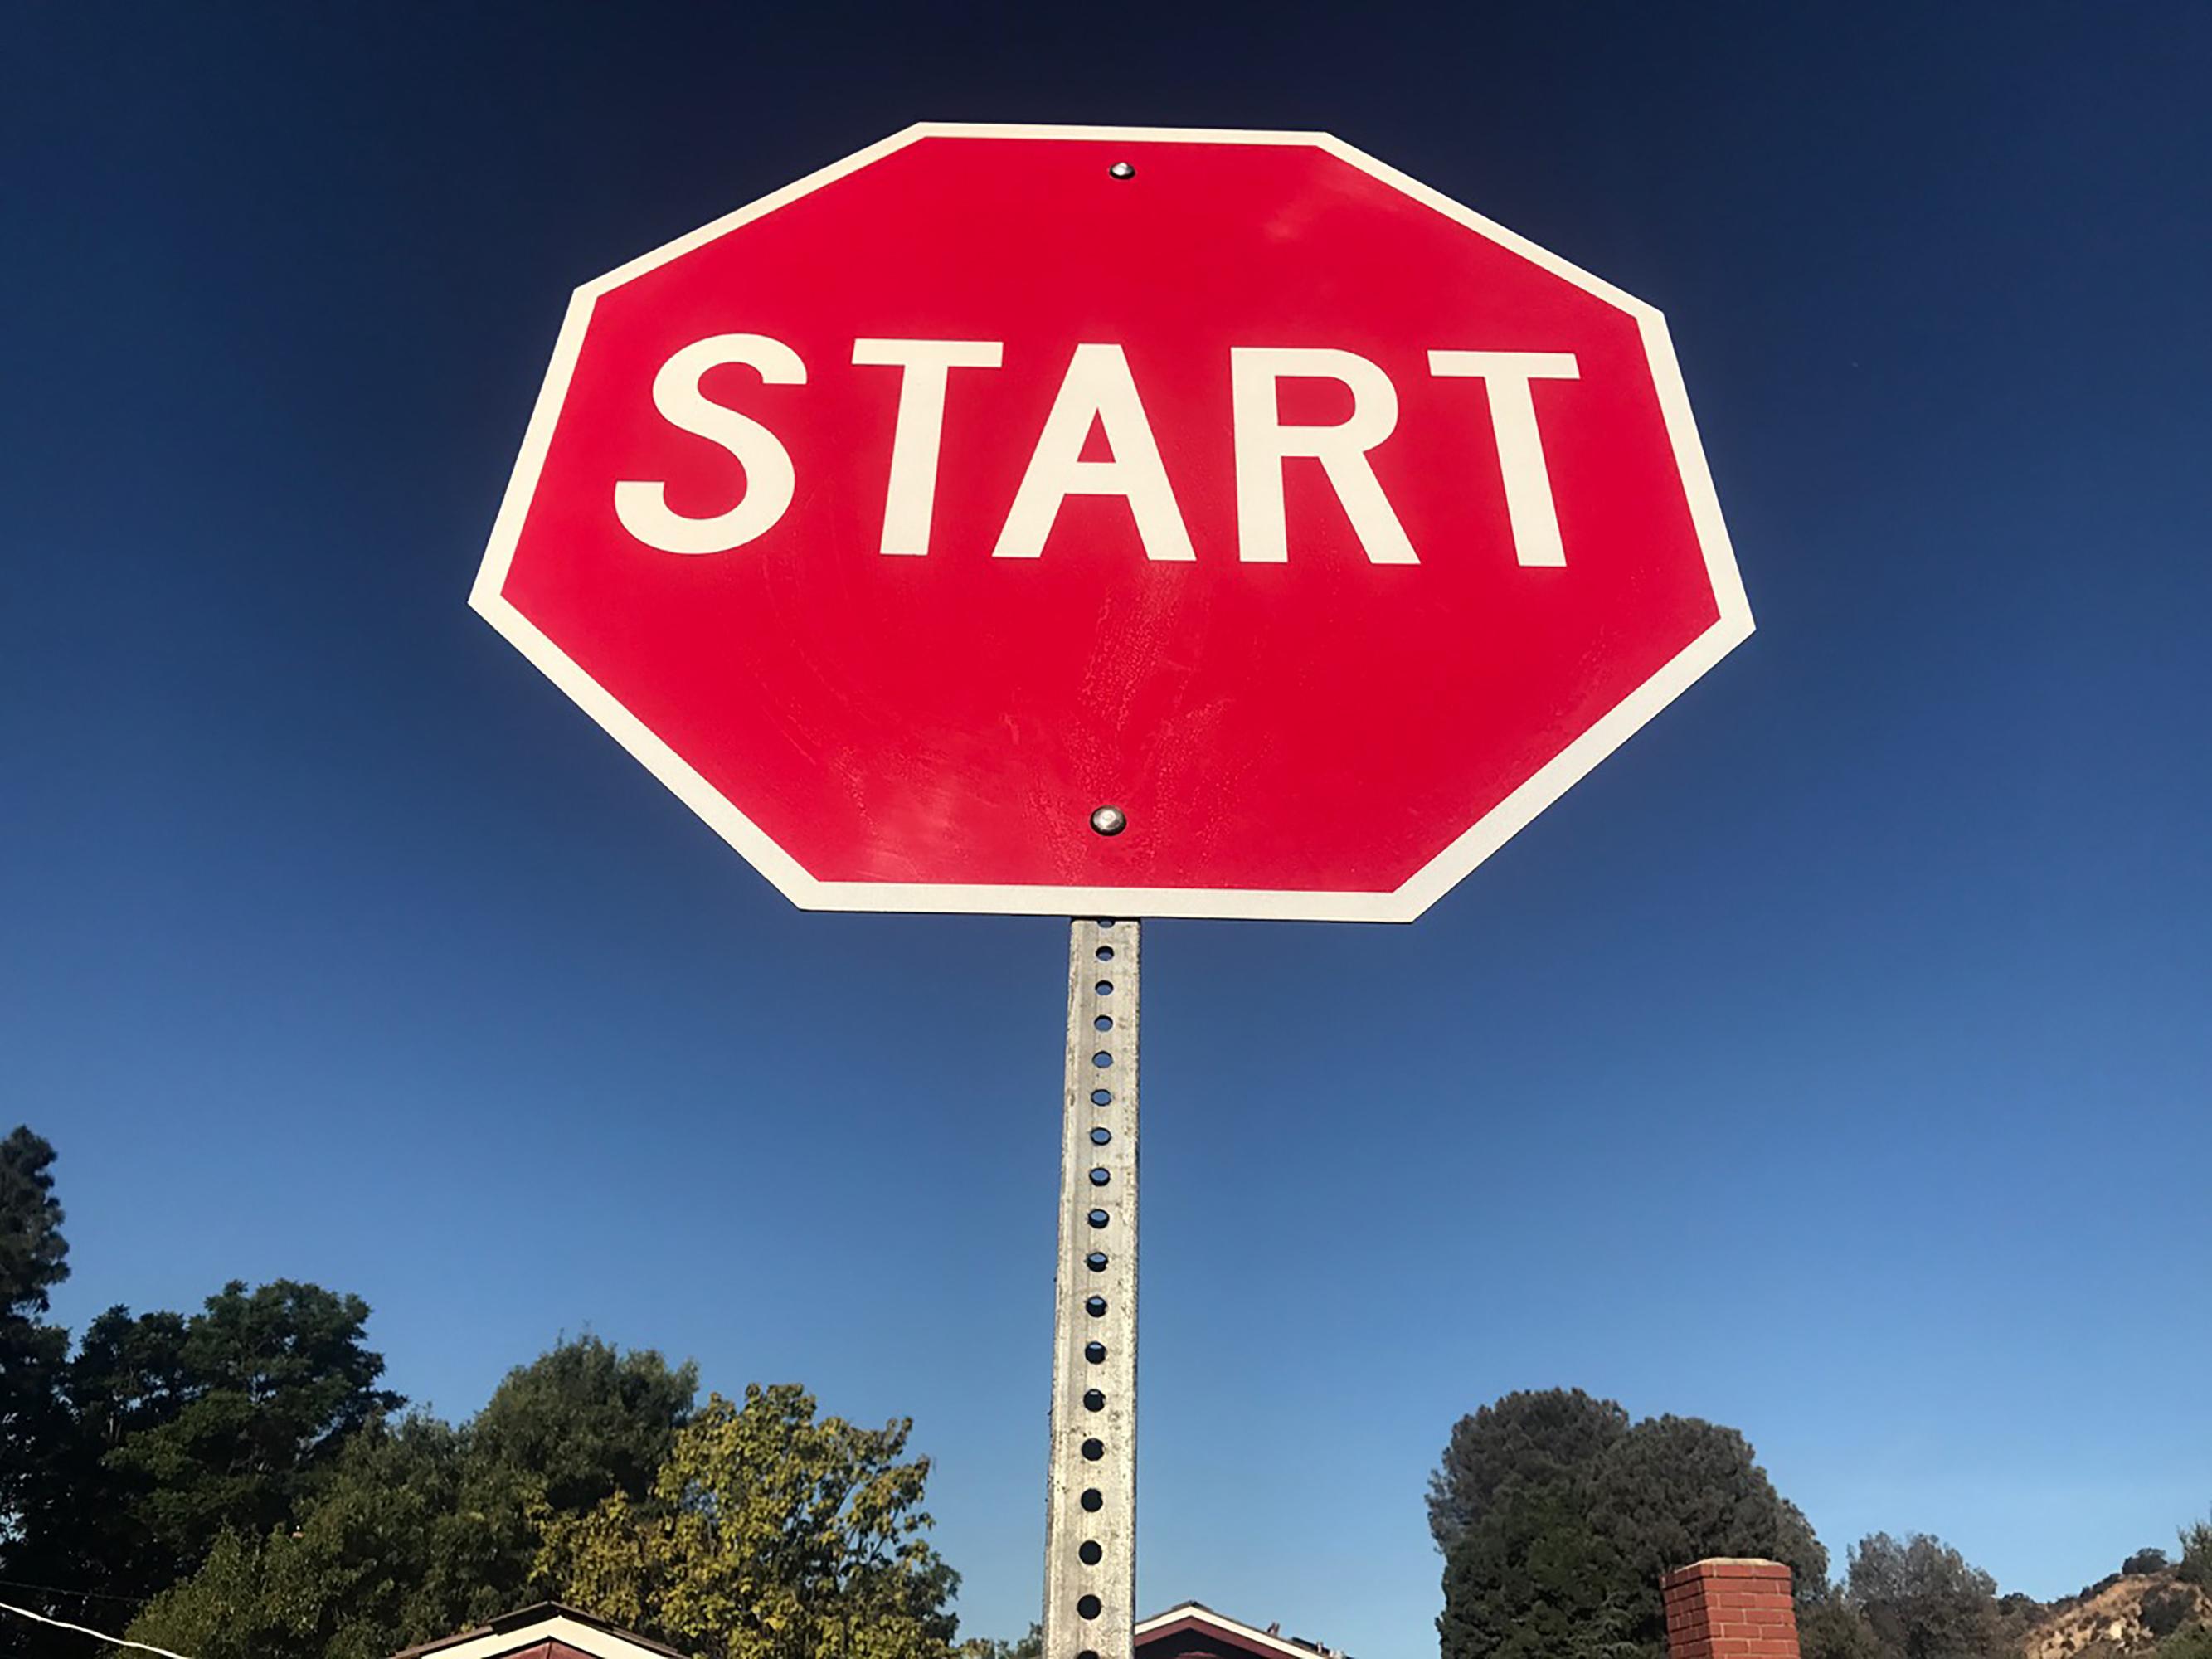 "Start" - Contemporary Street Sign Sculpture